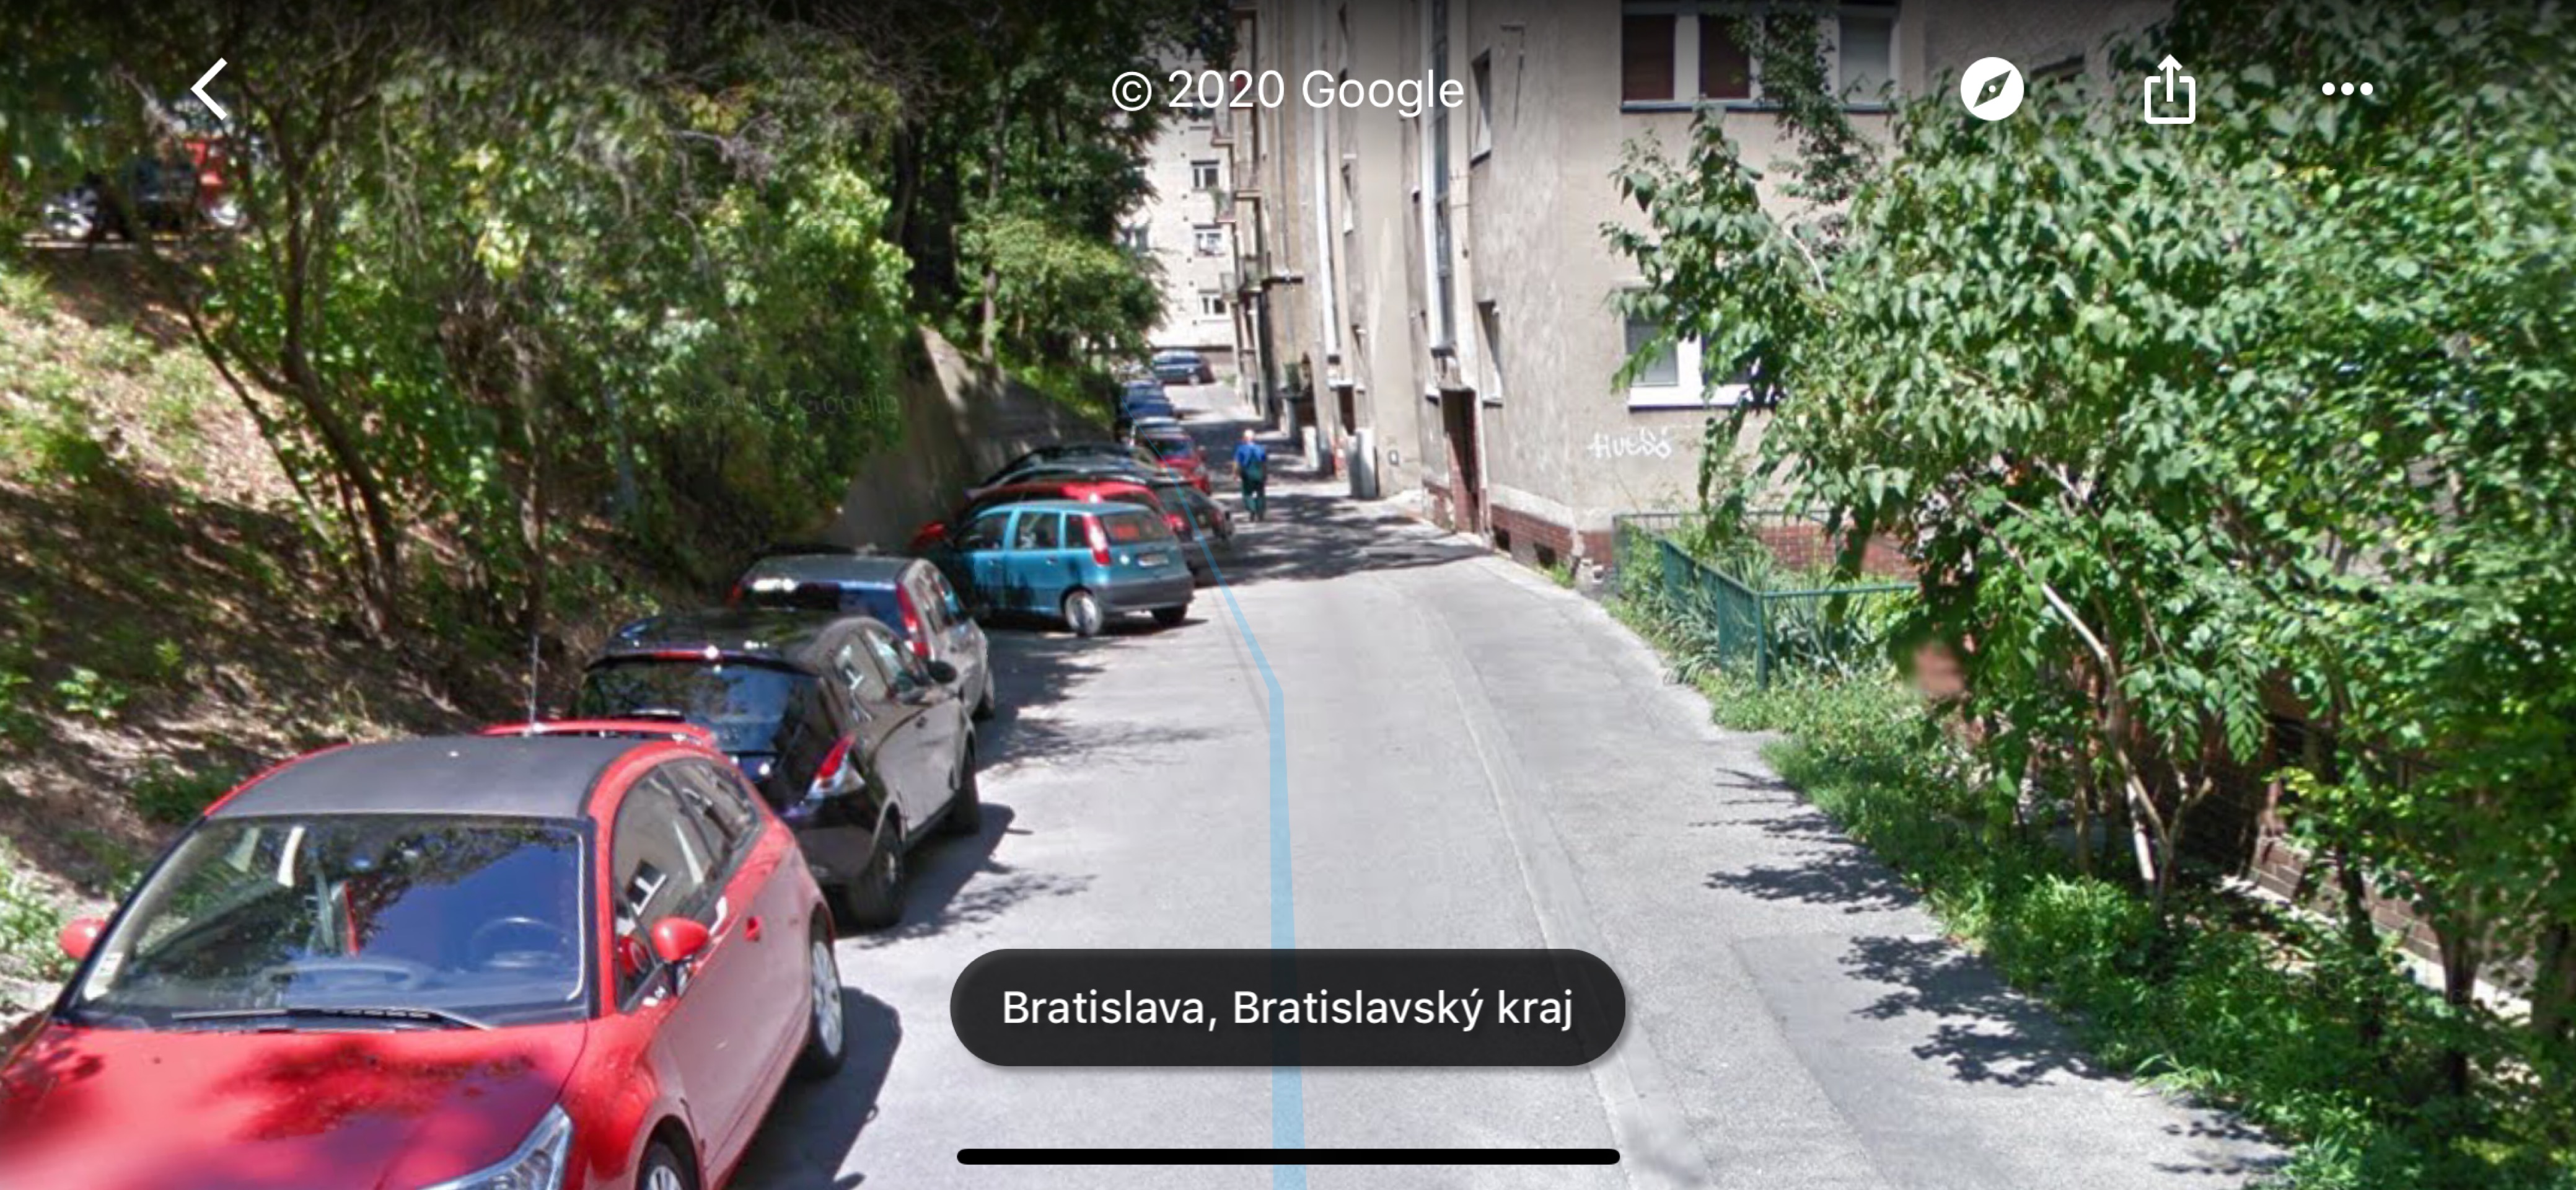 Parkovanie zadarmo v blizkosti Ministerstva zahranicnych veci v centre Bratislavy